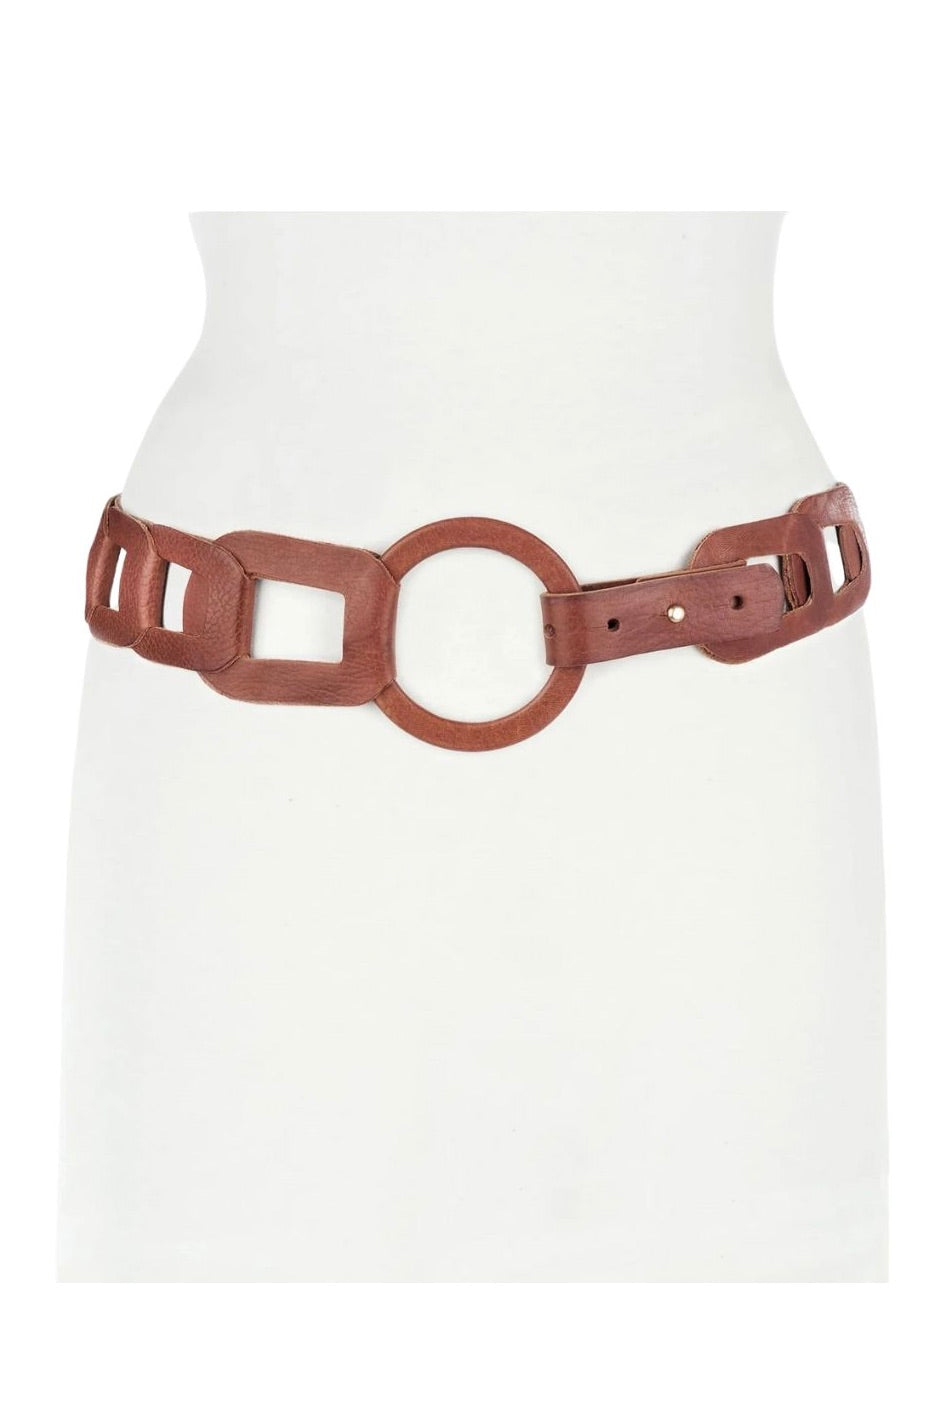 Brave Leather: Inian Adjustable Belt (2 Colours)